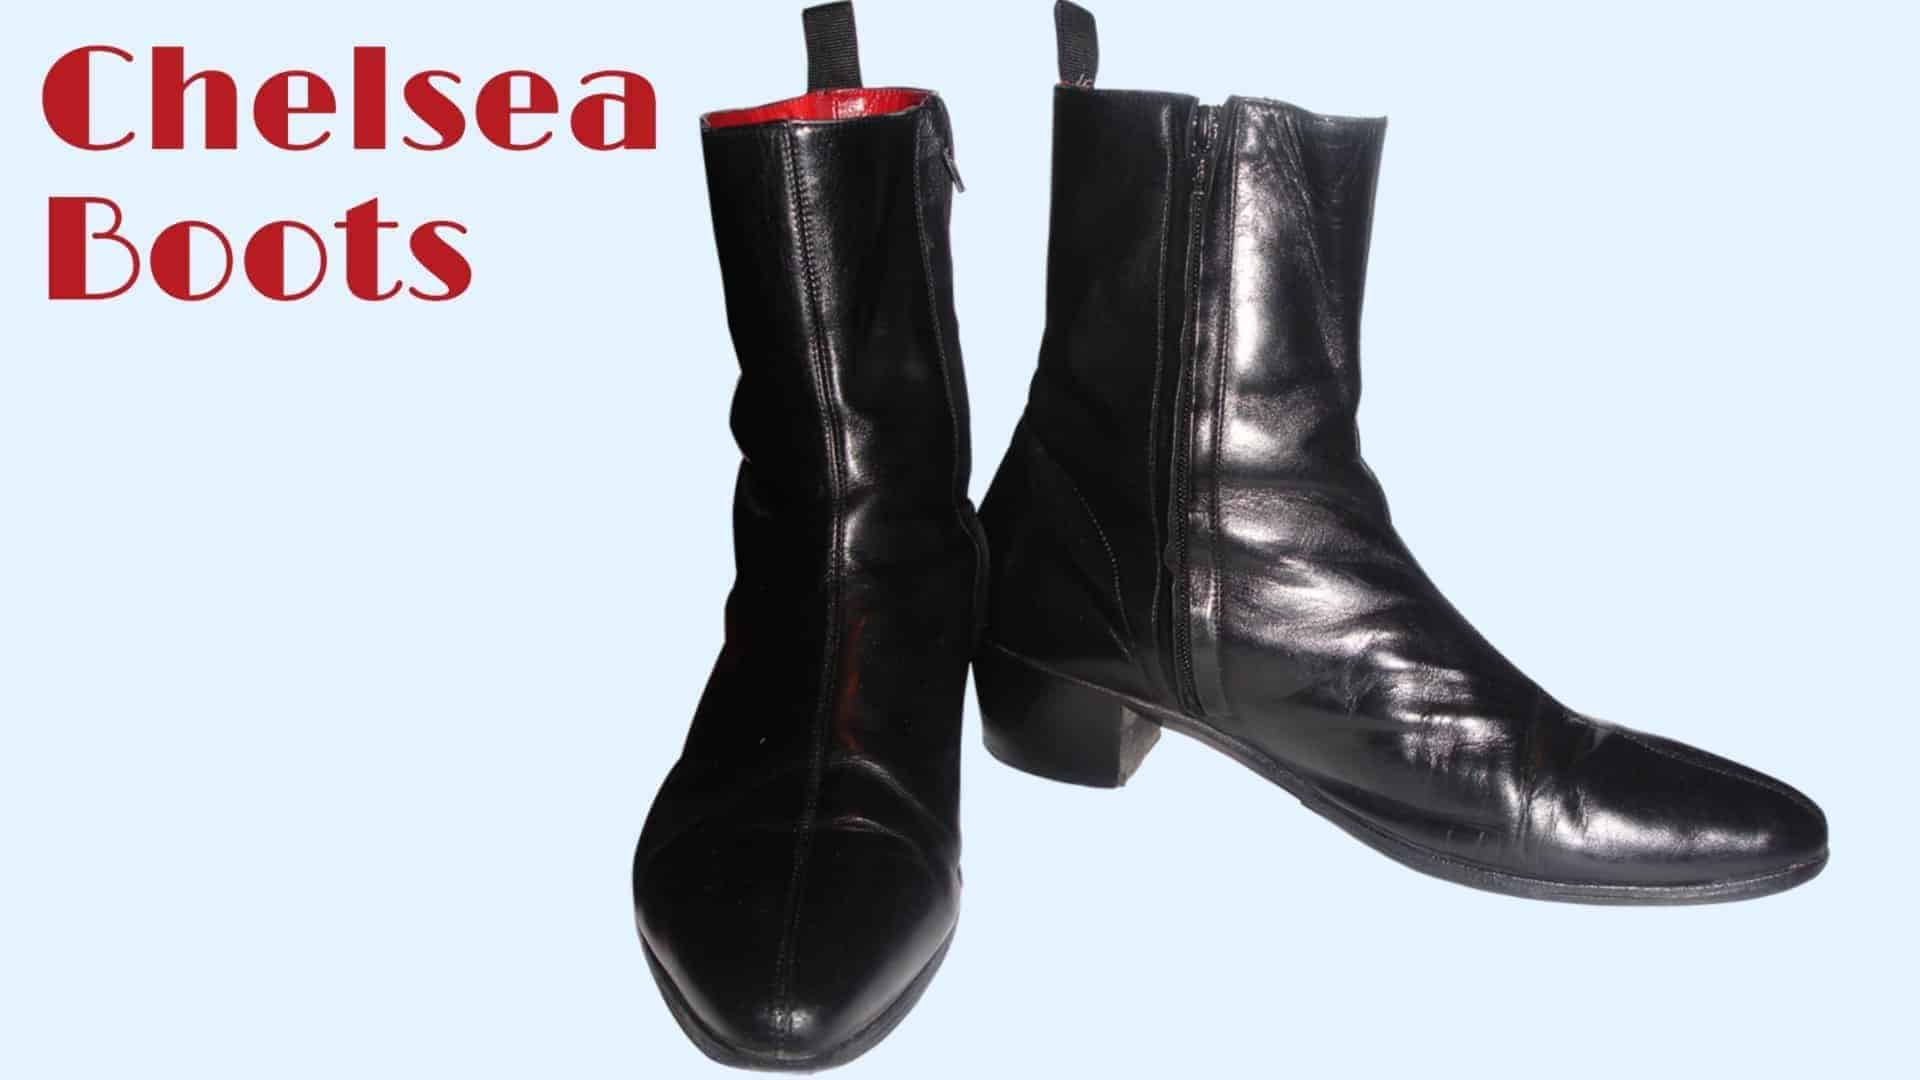 Chelsea-Boots-Dress-Shoes